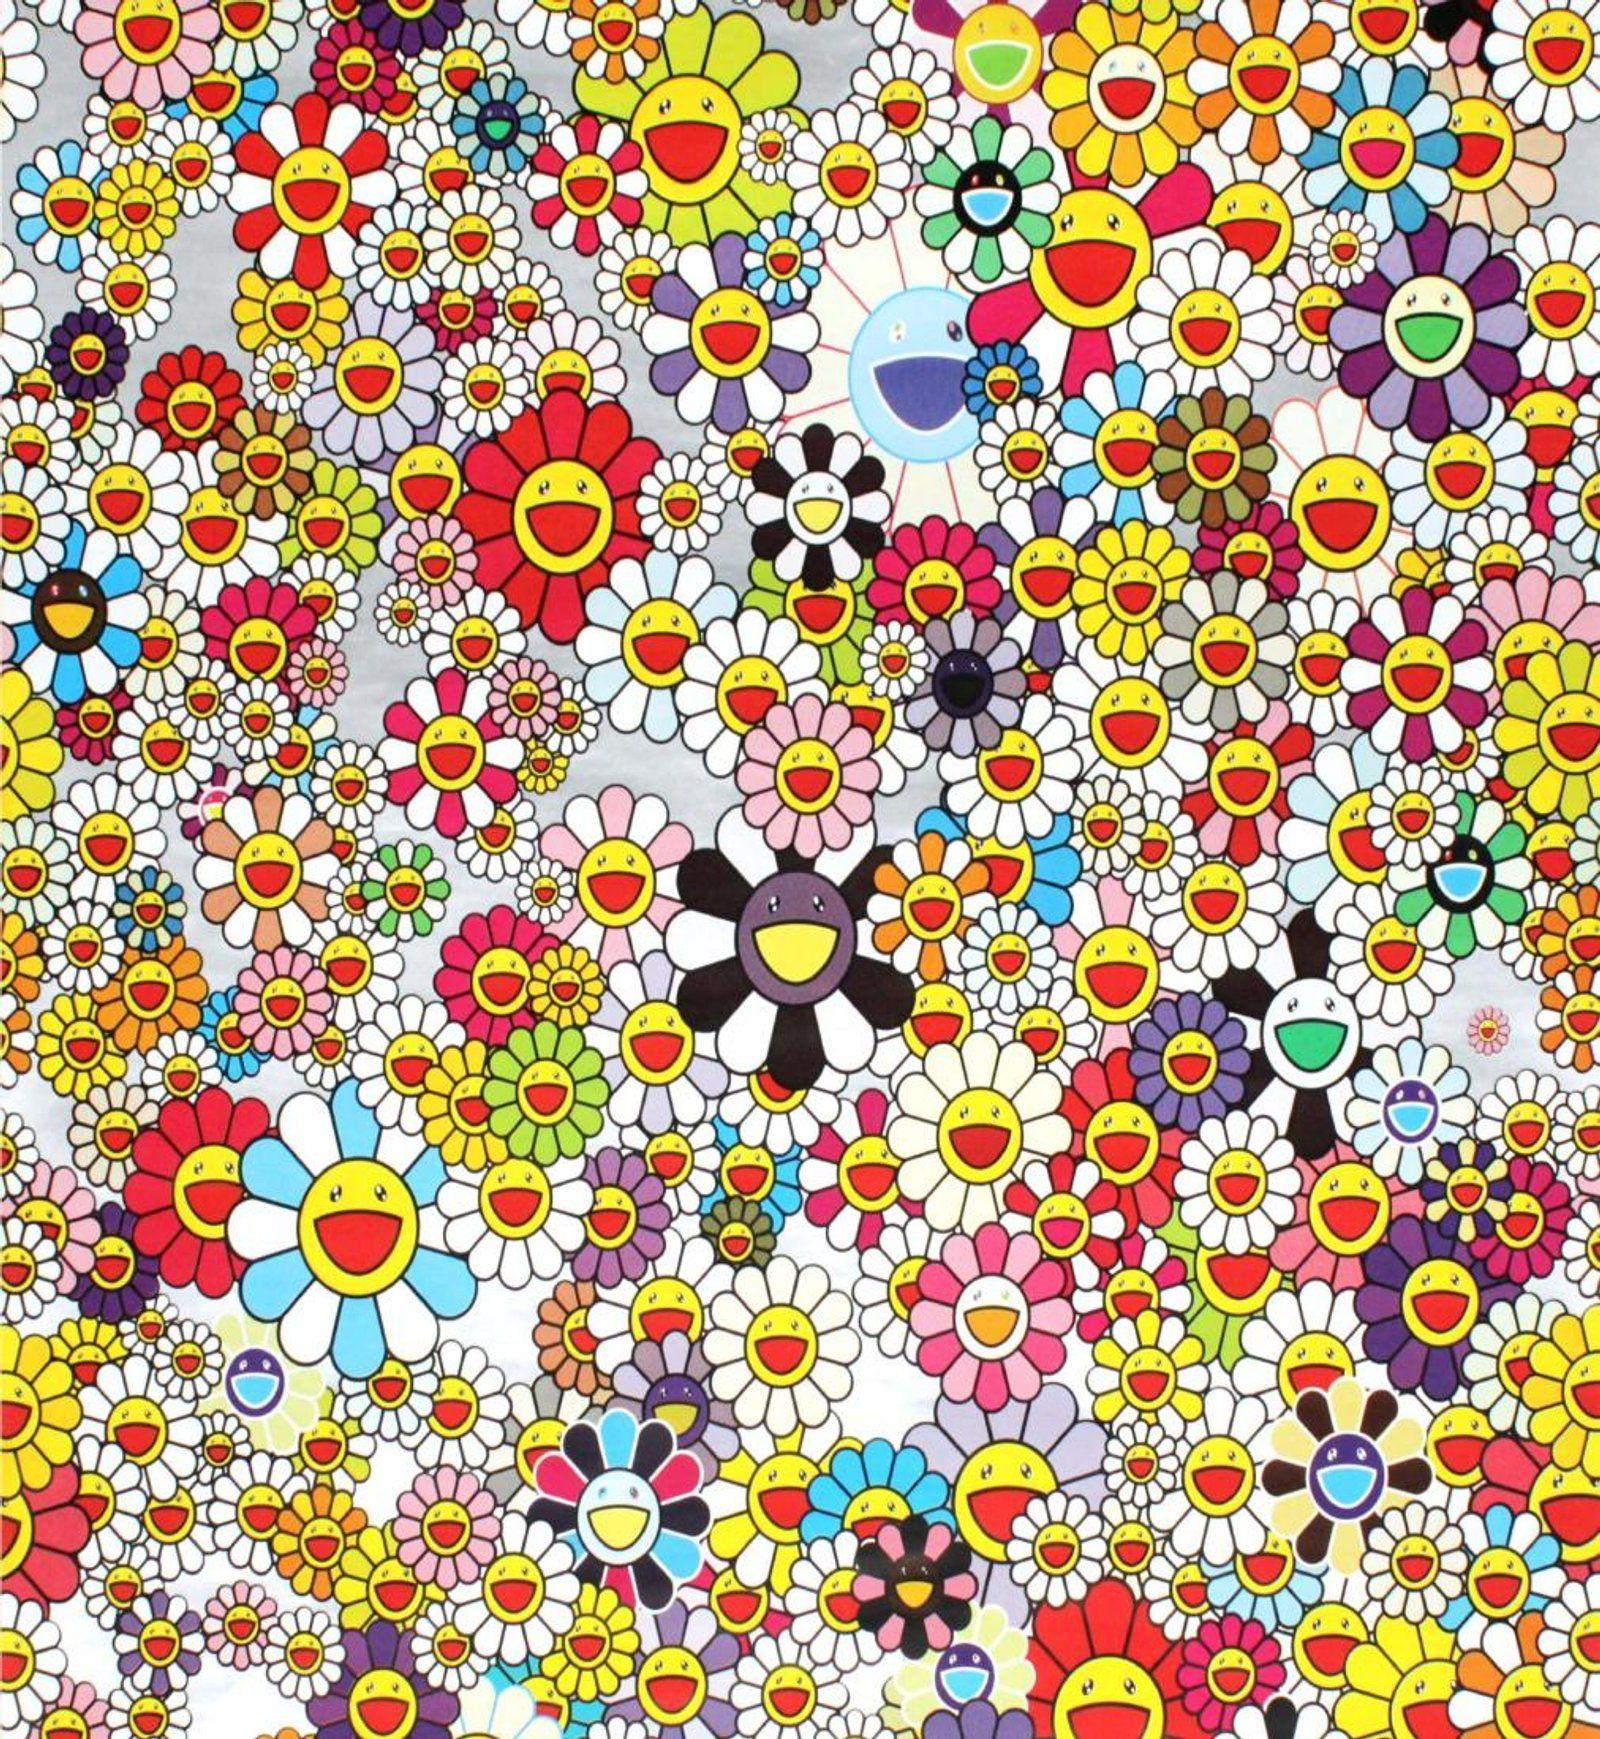 Download Takashi Murakami Underwater 4K Wallpaper